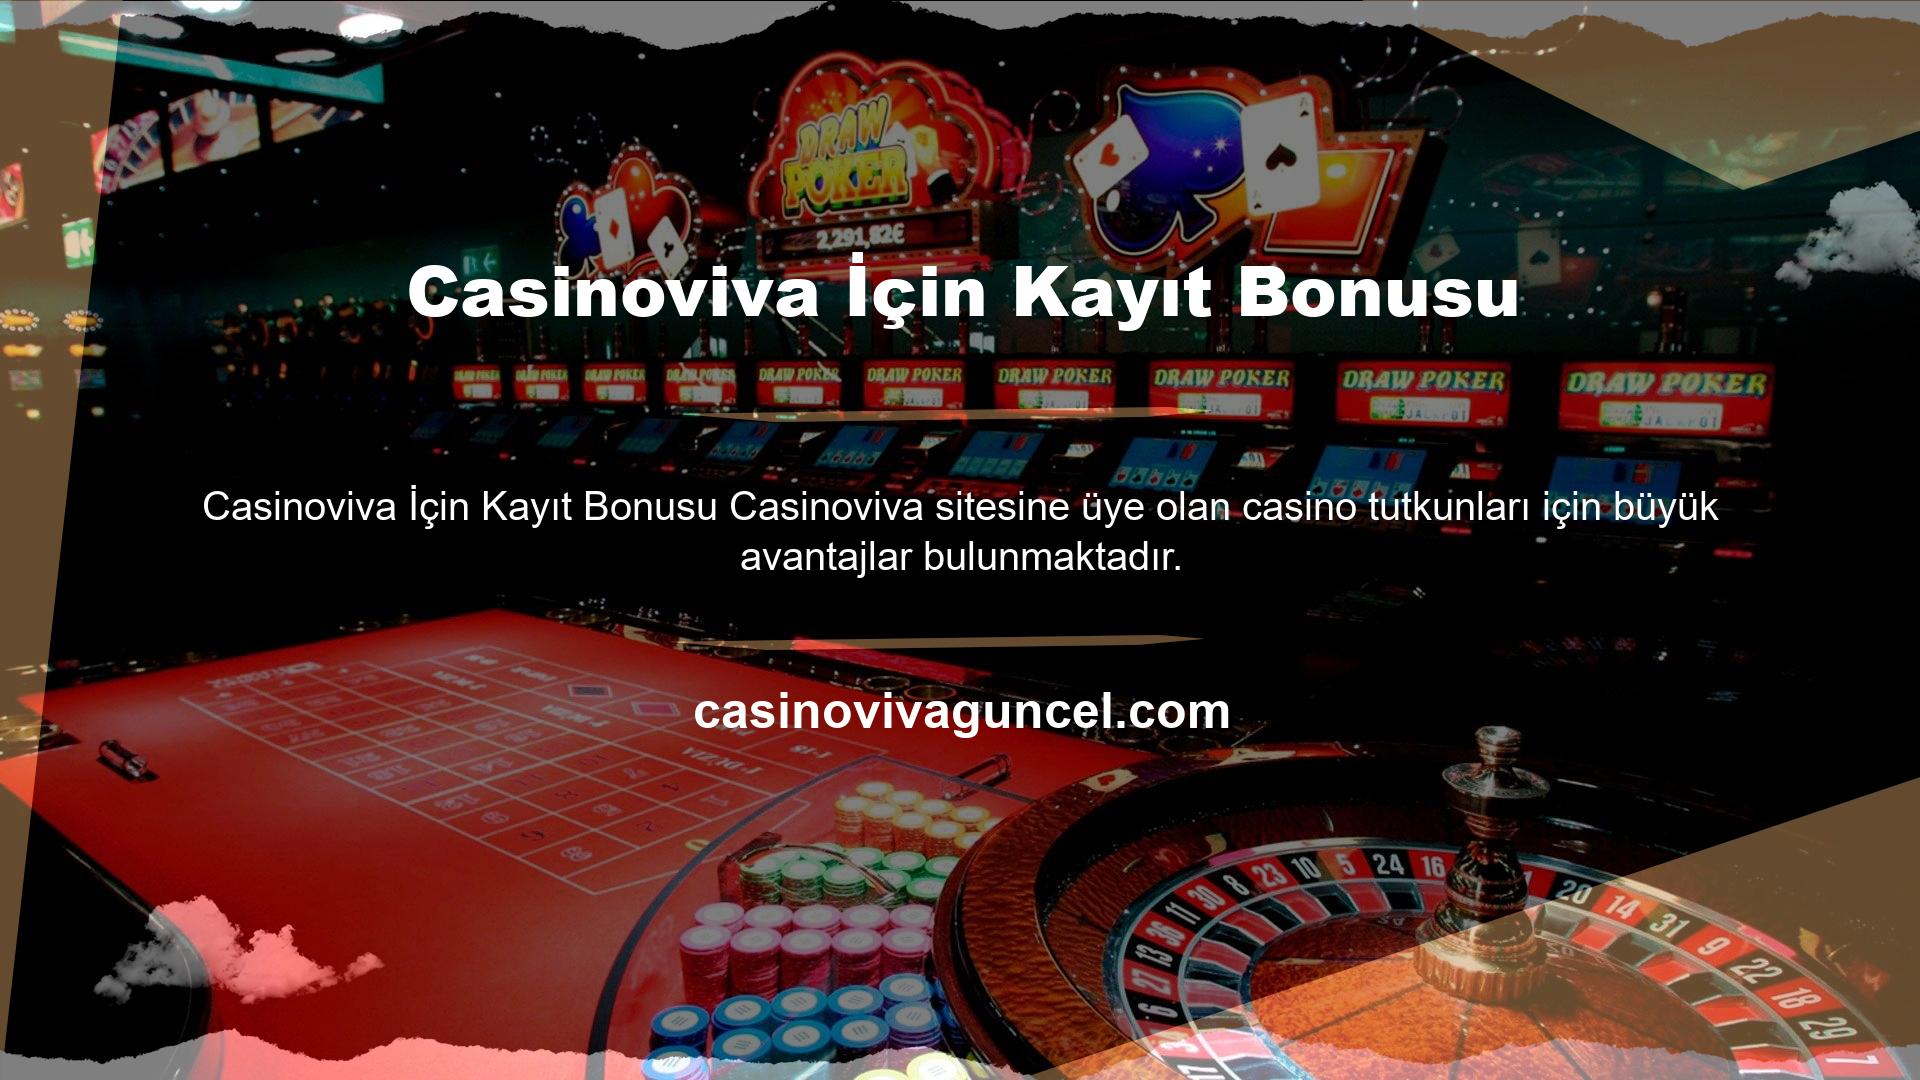 Çünkü siteye kayıt olan casino severler bir kayıt bonusu alabilirler